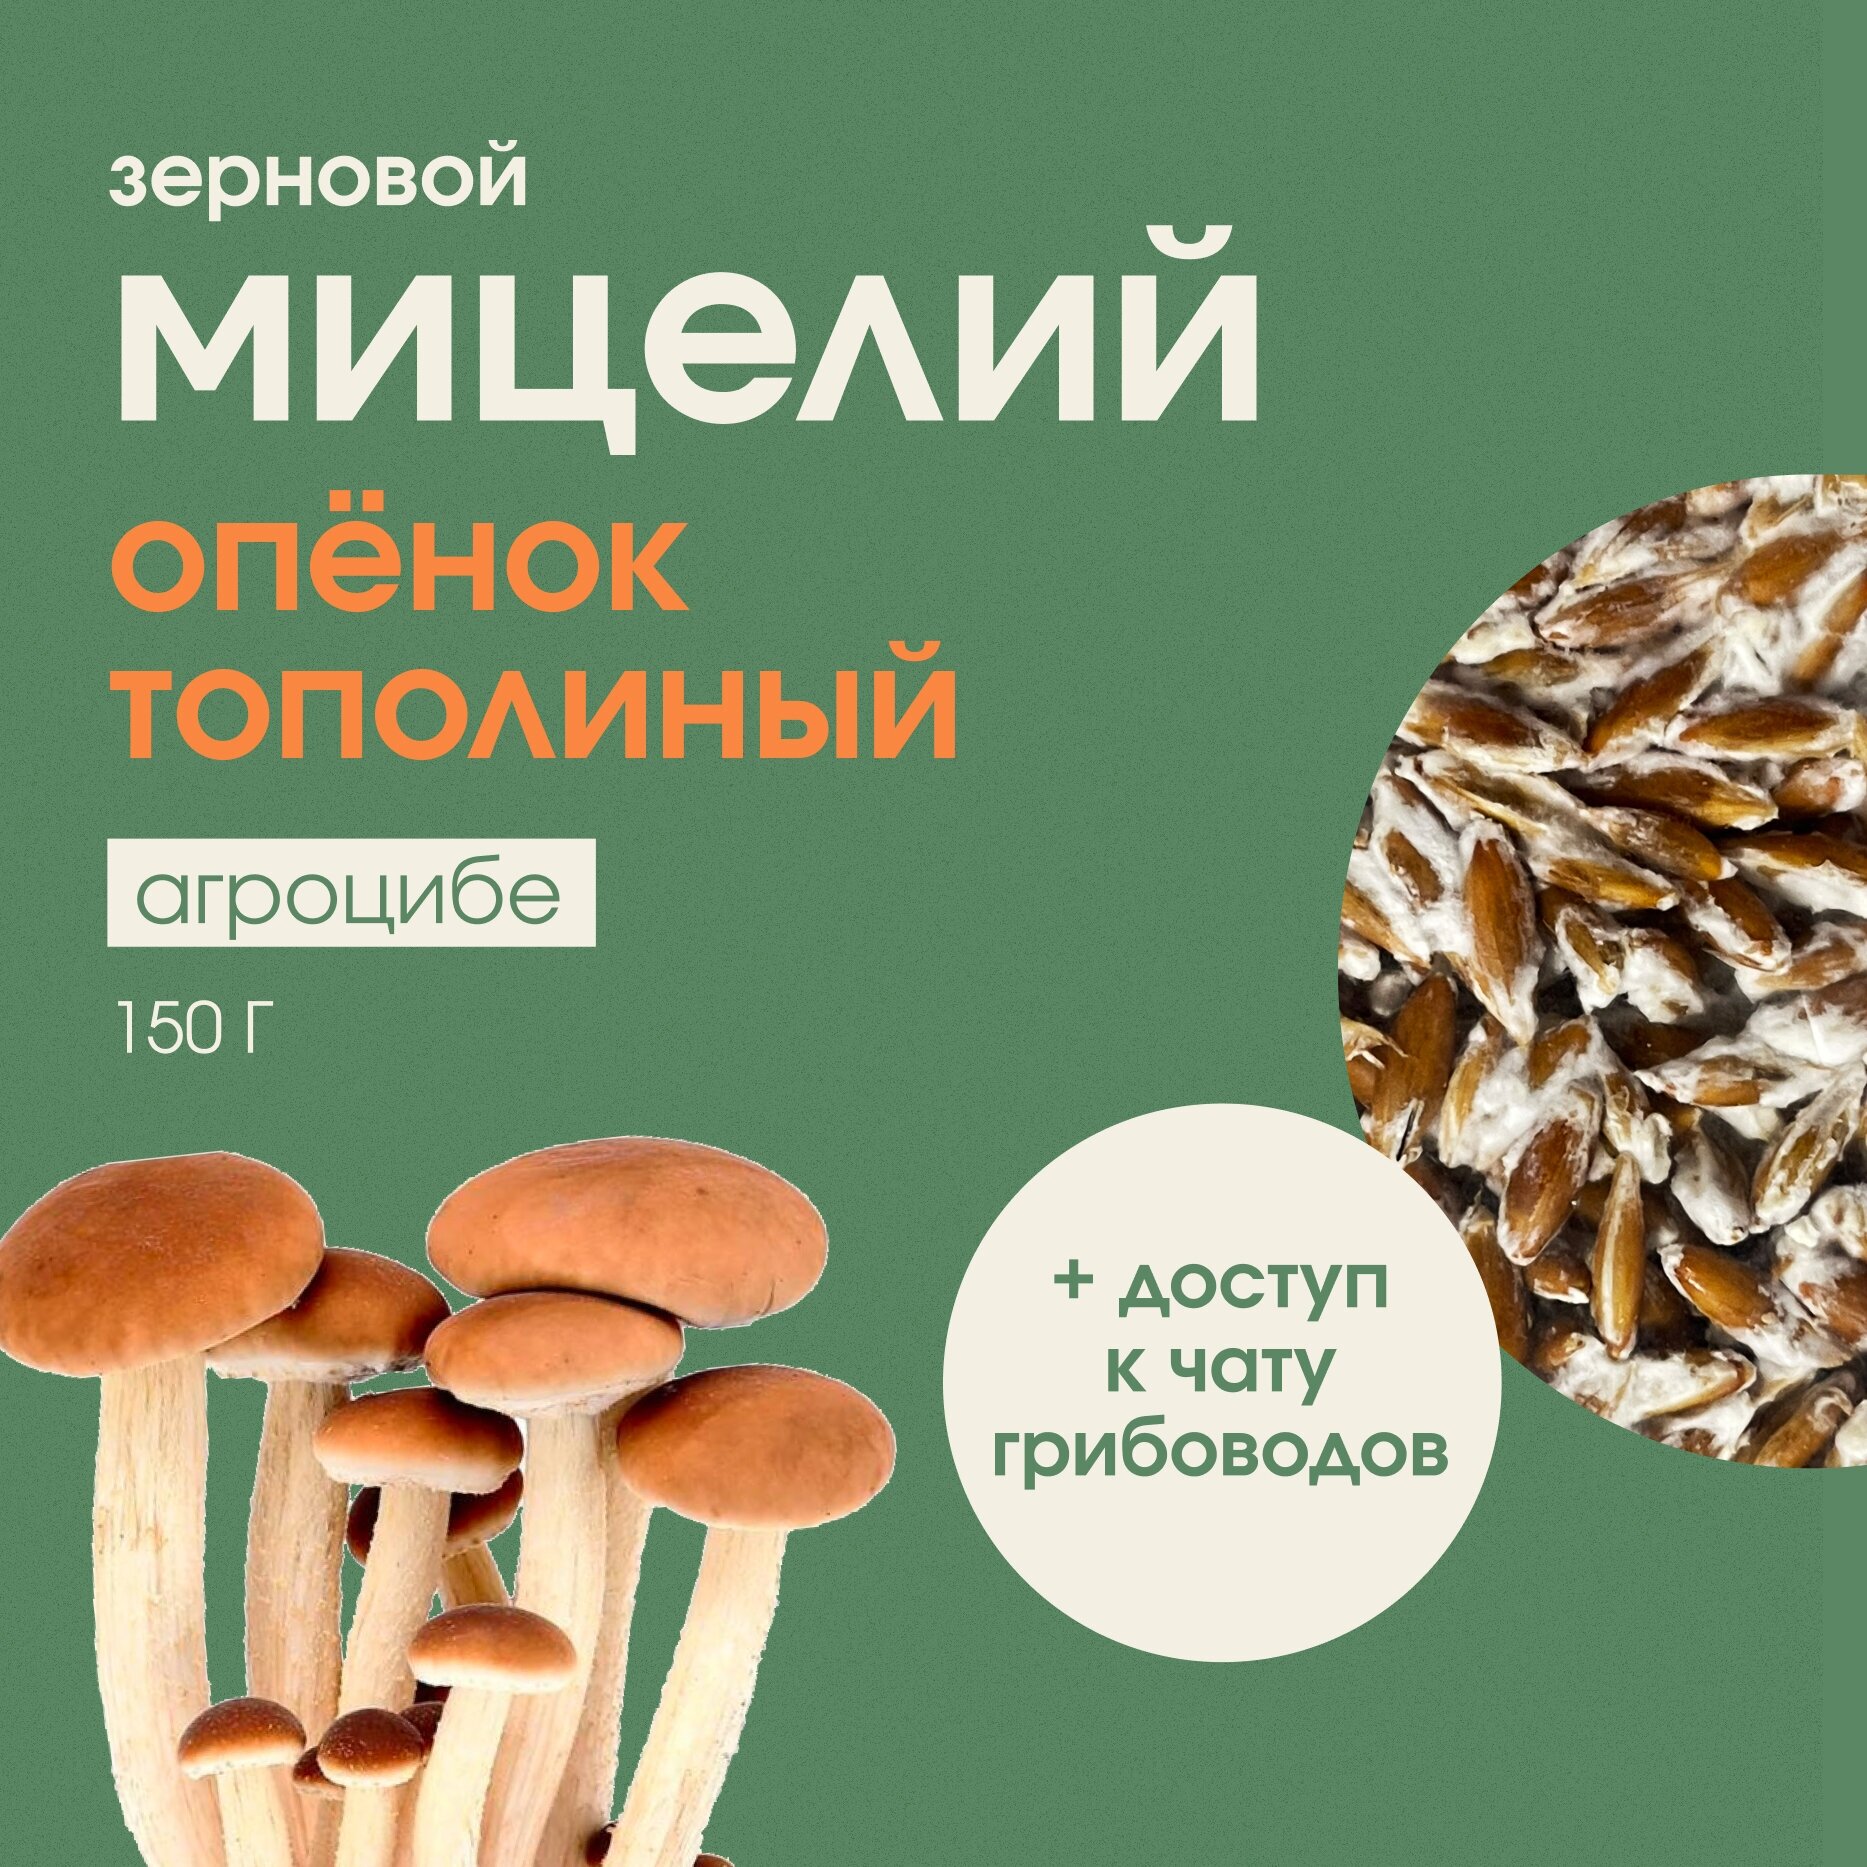 Мицелий грибов опенка тополиного. Грибница для выращивания